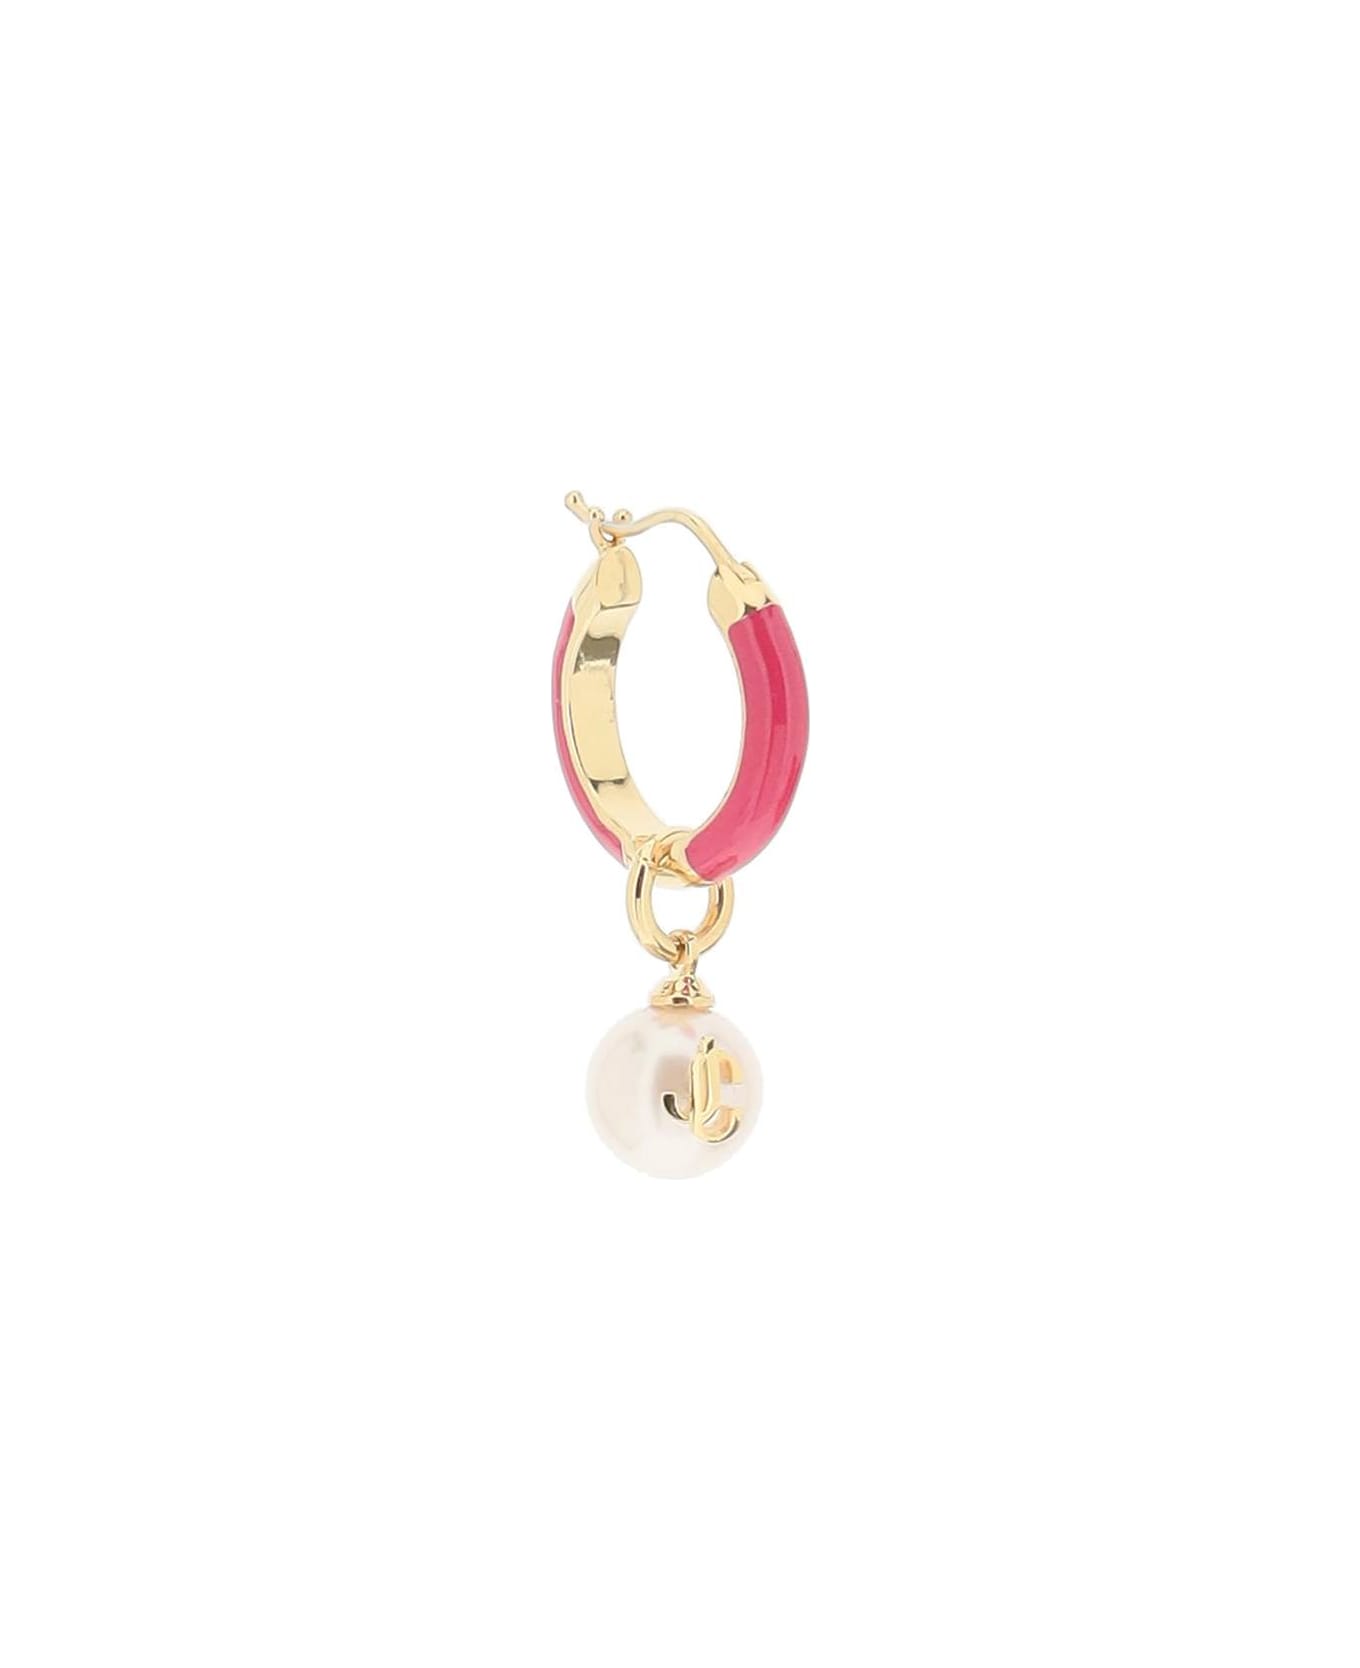 Jimmy Choo Hoop Earrings With Pearls - GOLD FUCHSIA (White)